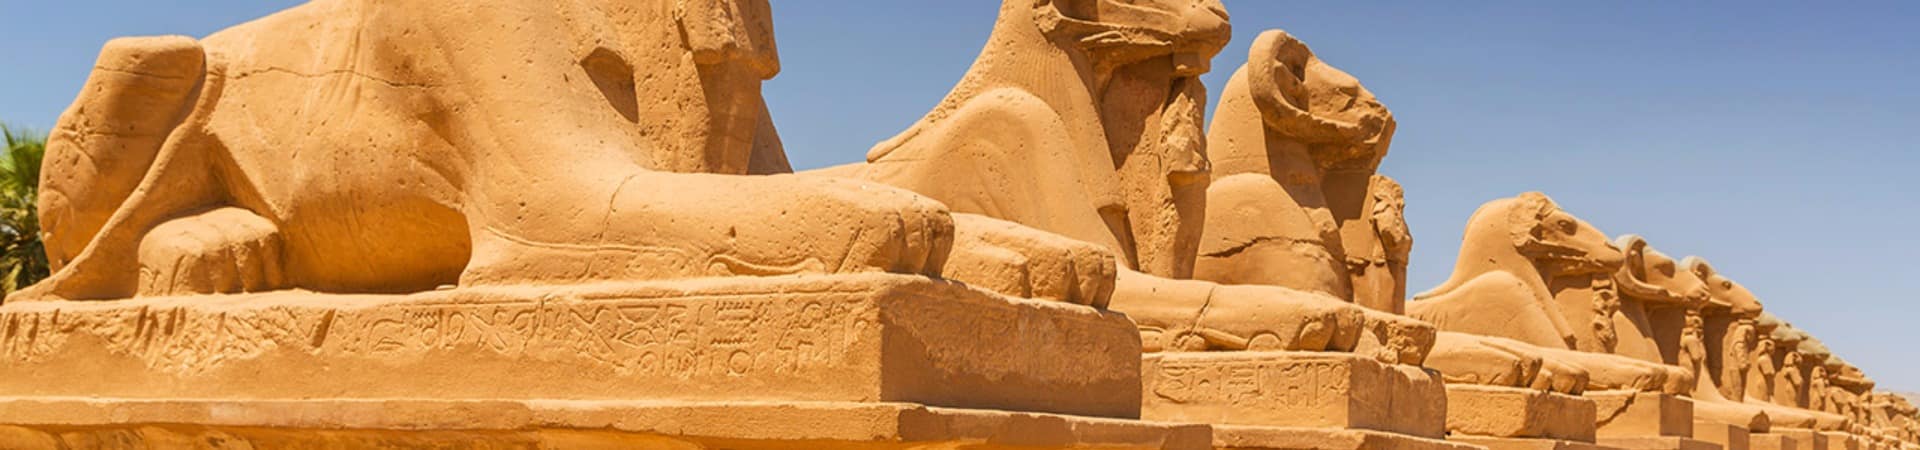 Detalhes no Templo Karnak, Luxor.